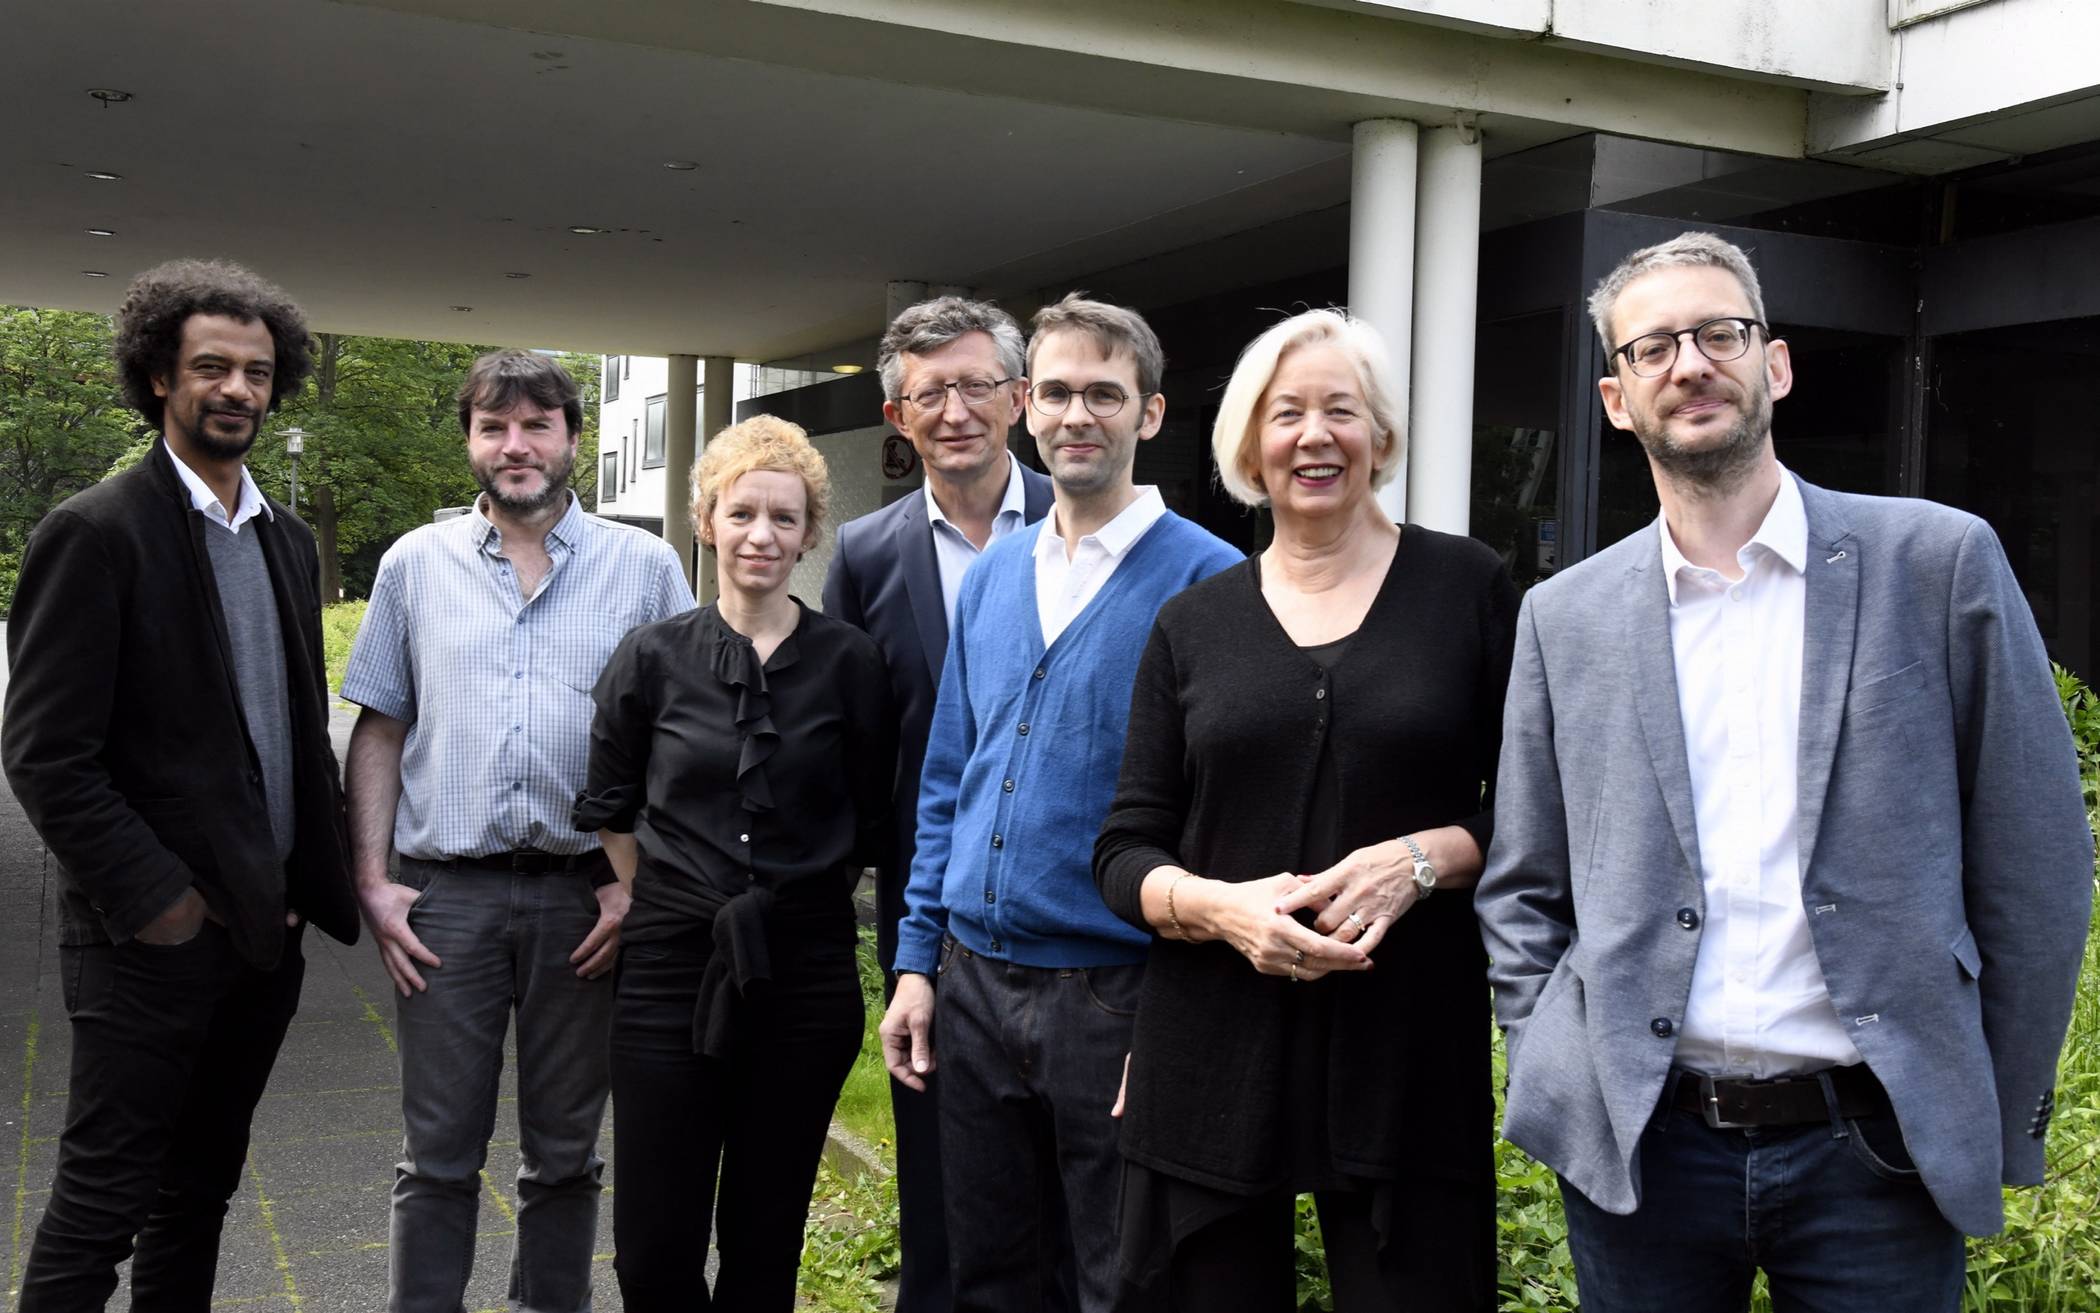  Gemeinsam haben sie alle viel vor (von links): Ismaël Dia, Robert Sturm, Simone Rust, Matthias Nocke, Salomon Bausch, Bettina Wagner-Bergelt und Roger Christmann. 